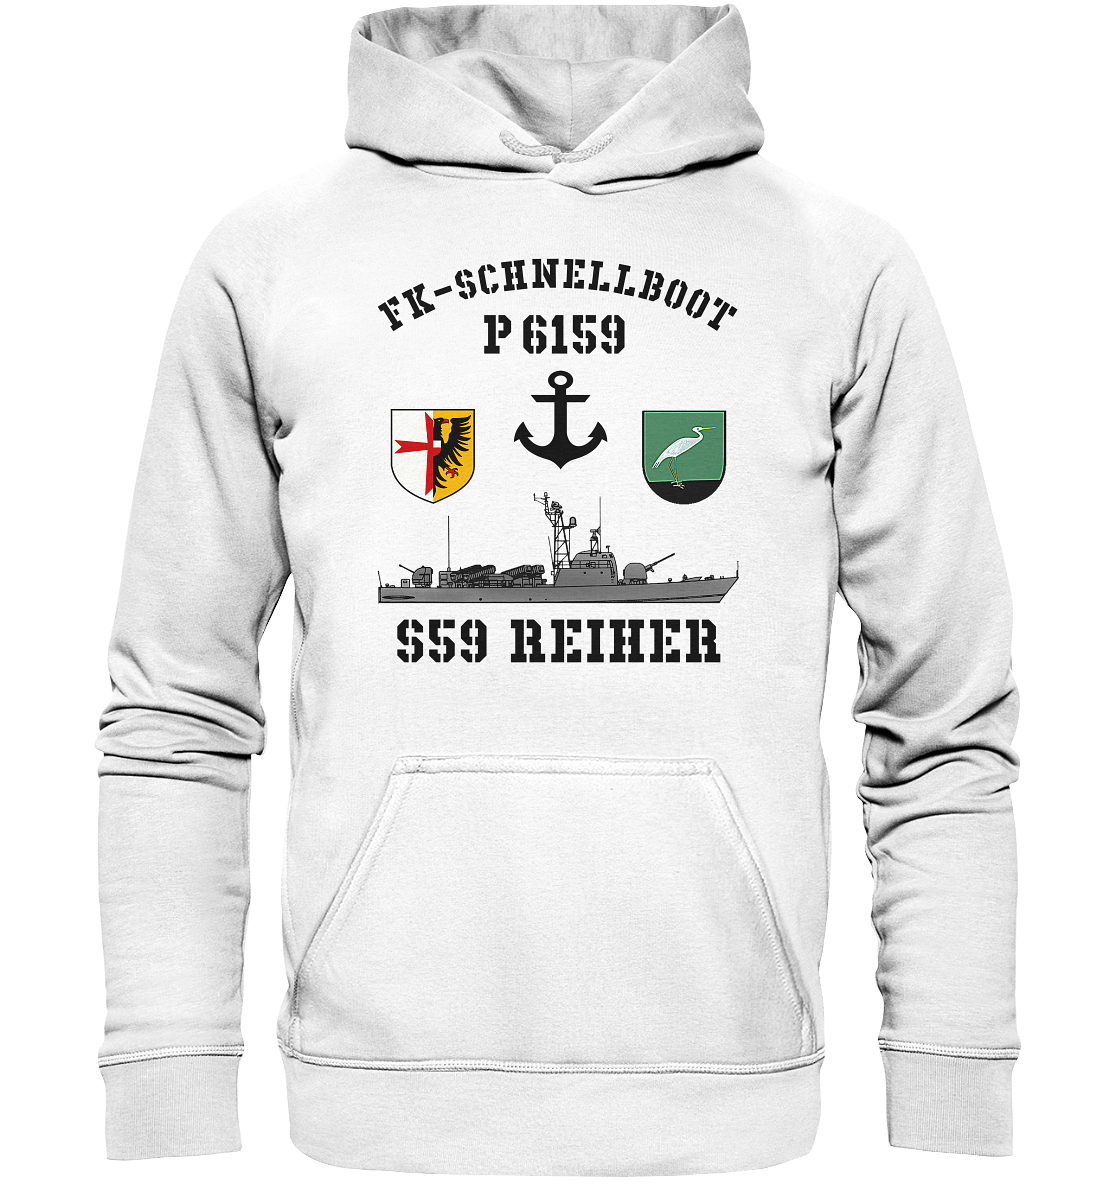 FK-Schnellboot P6159 REIHER Anker - Basic Unisex Hoodie